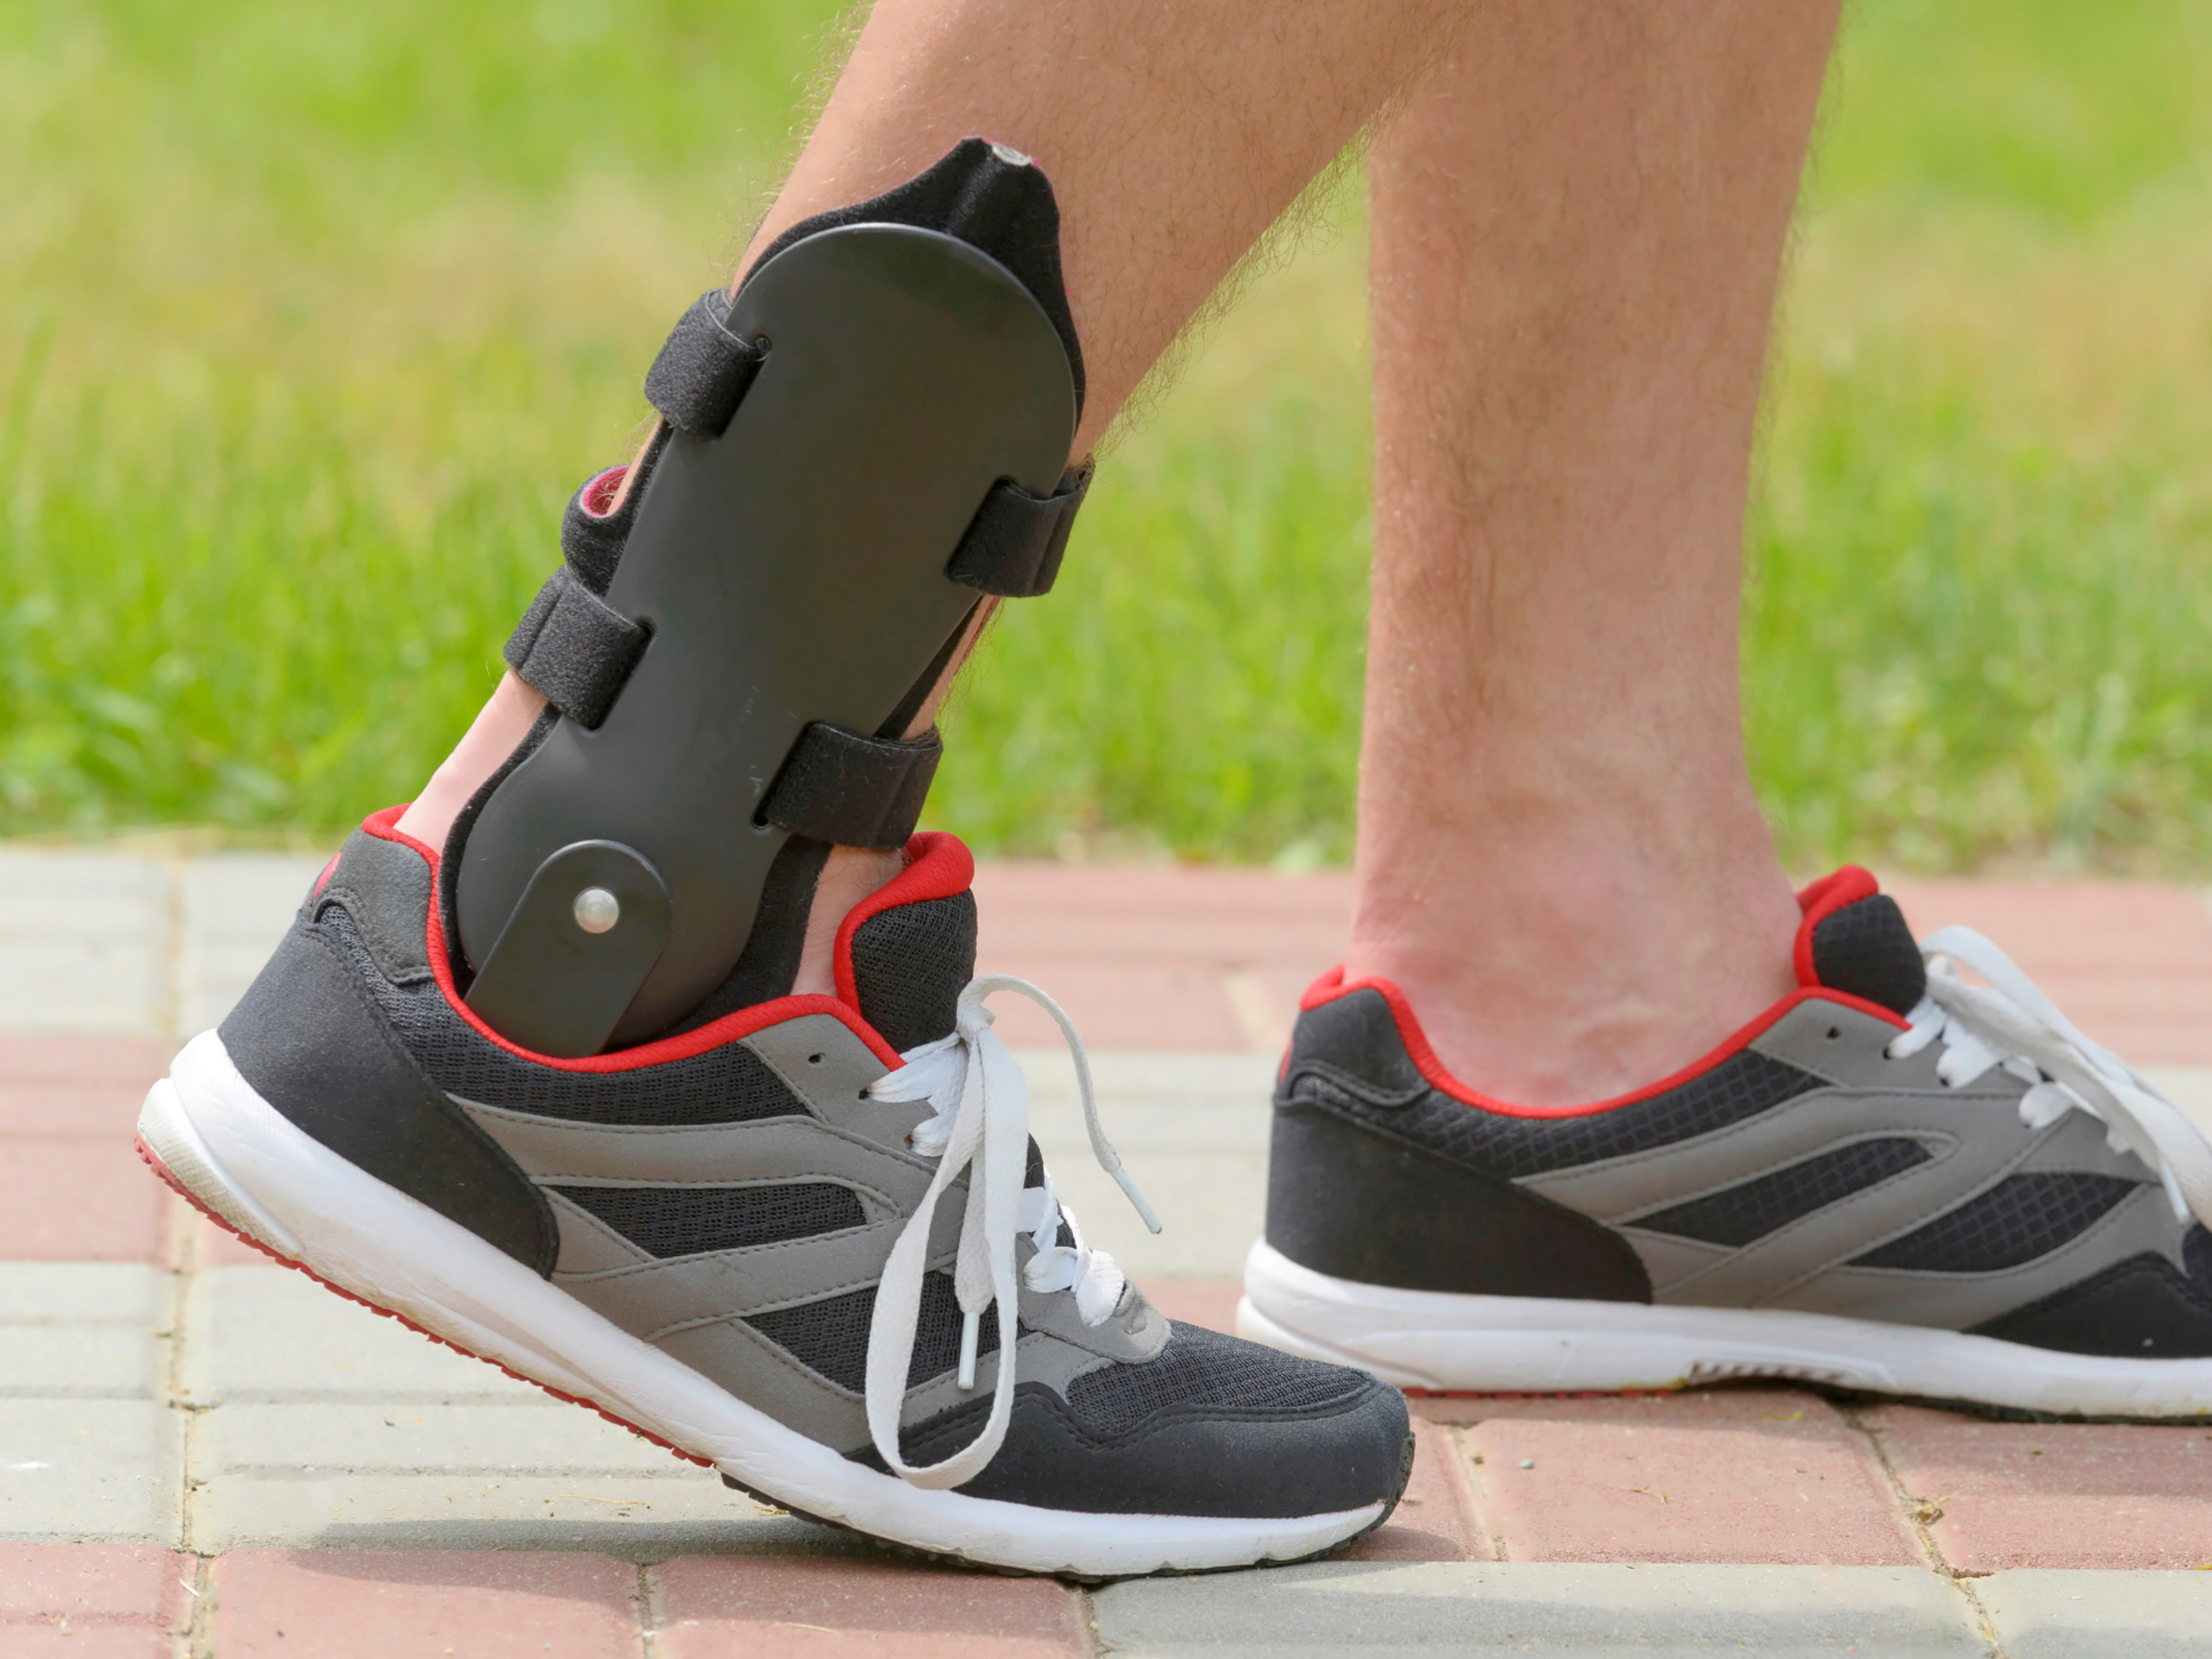 Les attelles pour entorse de la cheville agissent en limitant l'amplitude des mouvements d'inversion et d'éversion afin que vous puissiez marcher et courir sans solliciter vos ligaments.